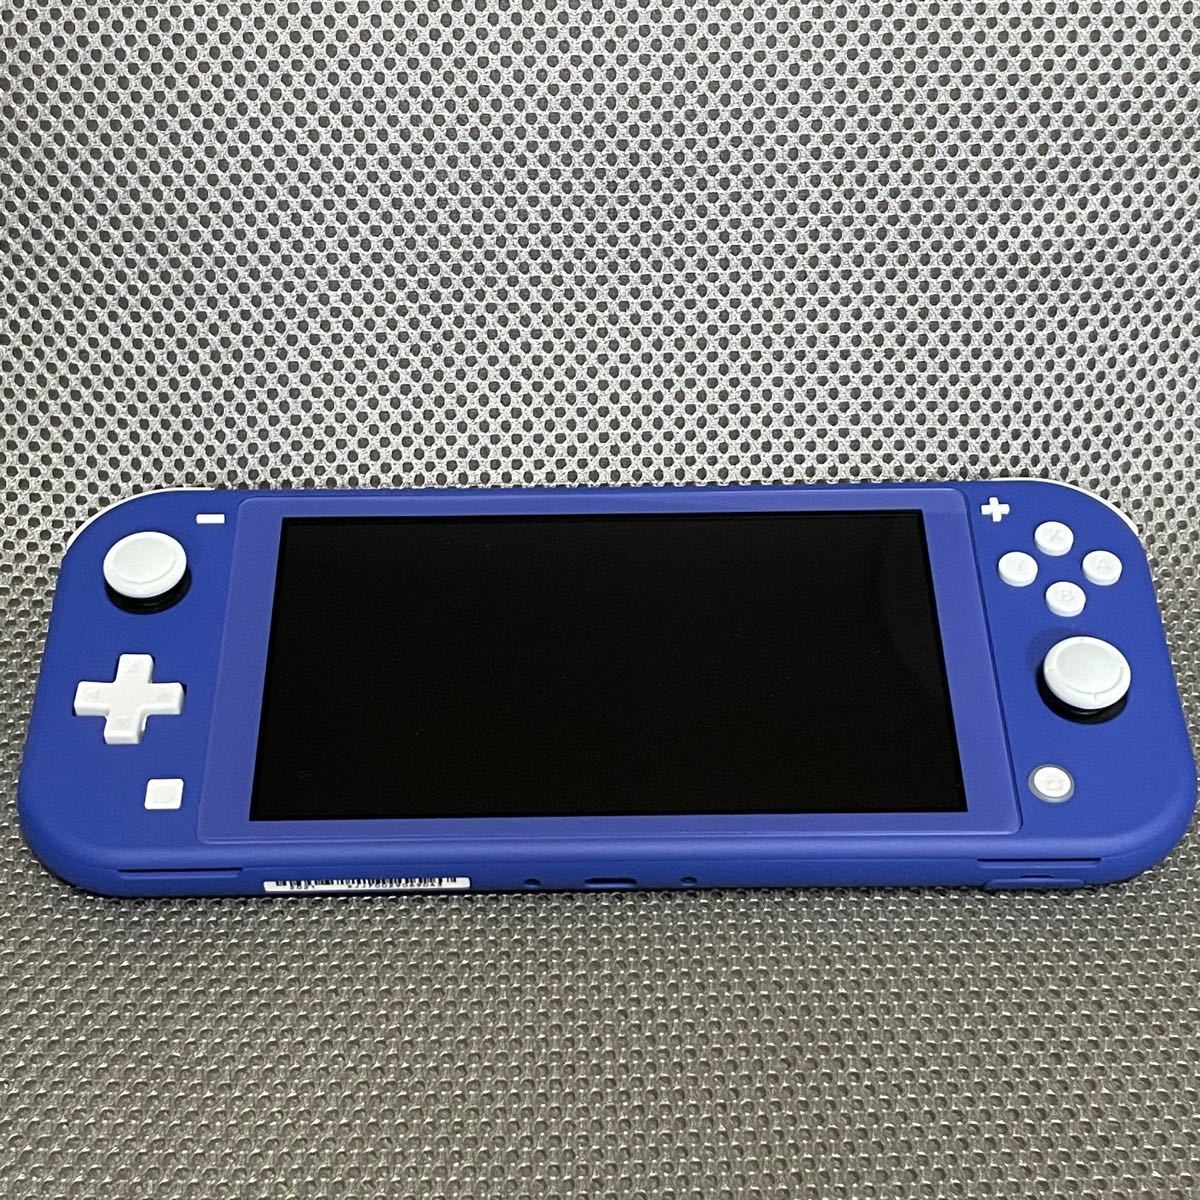 100％品質 Nintendo Switch Lite ブルー catalogo.foton.com.bo